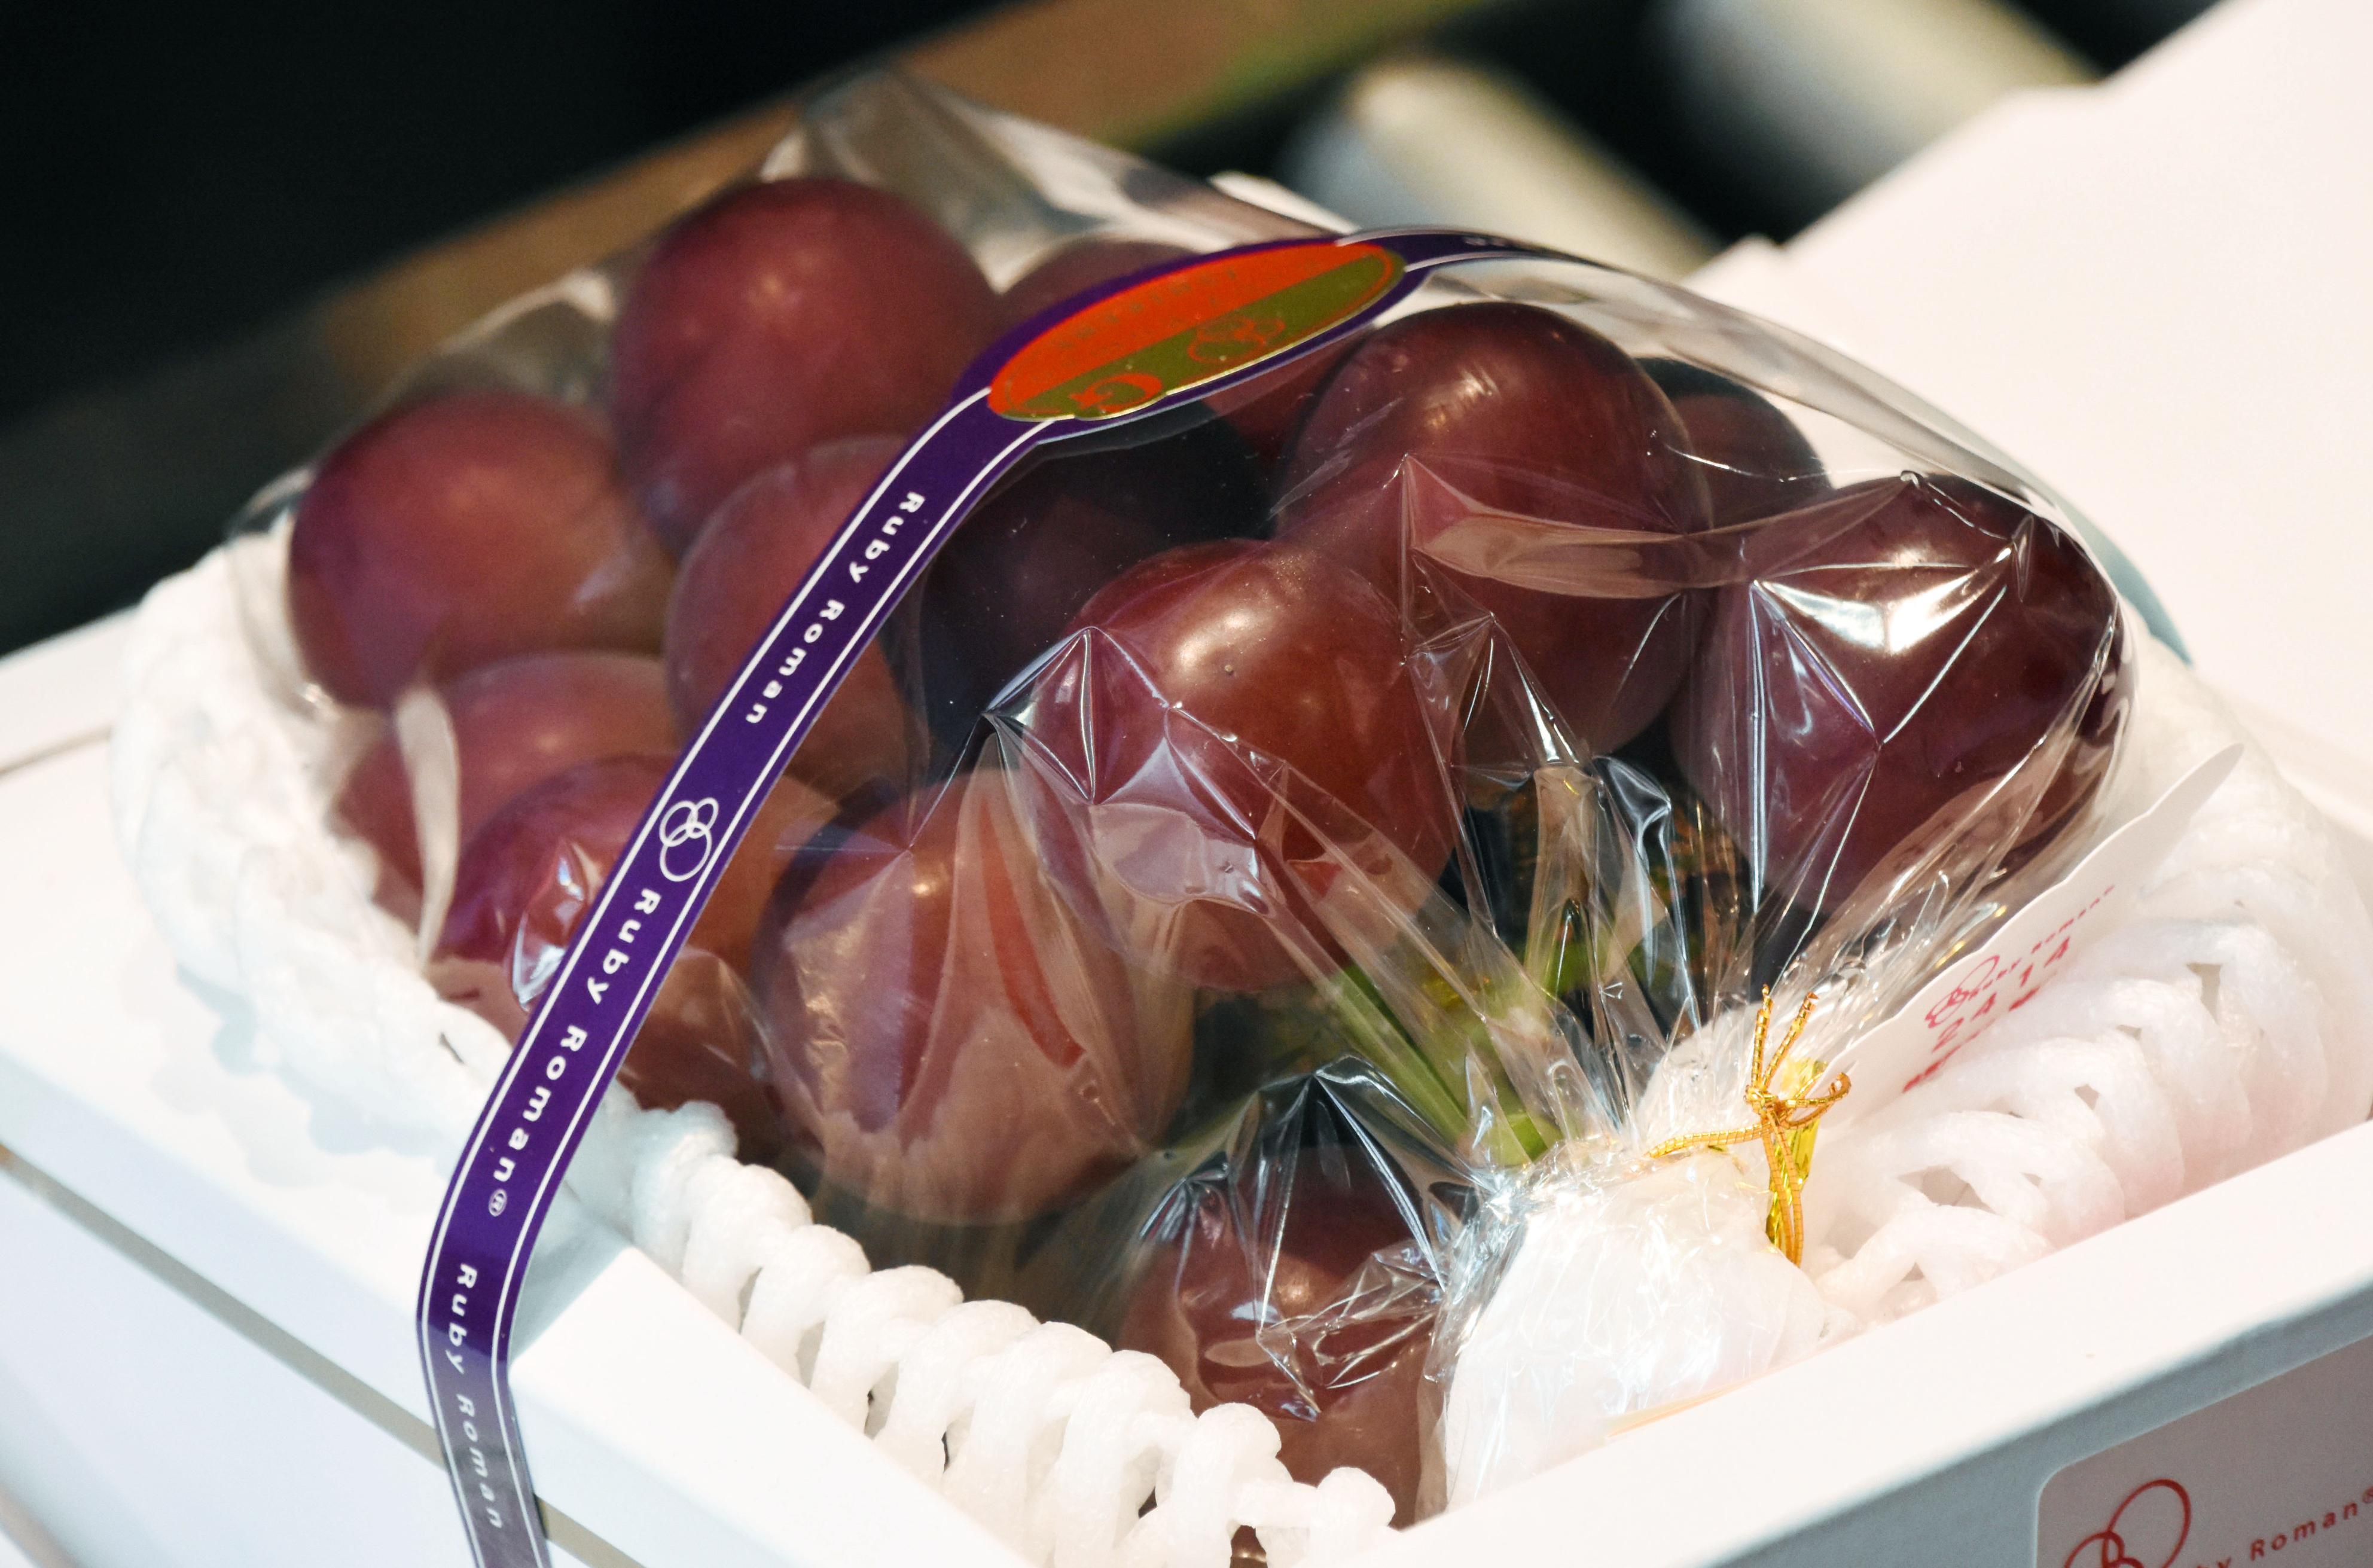 Ruby Roman grapes fetch record 1.1 mil. yen in season's 1st auction